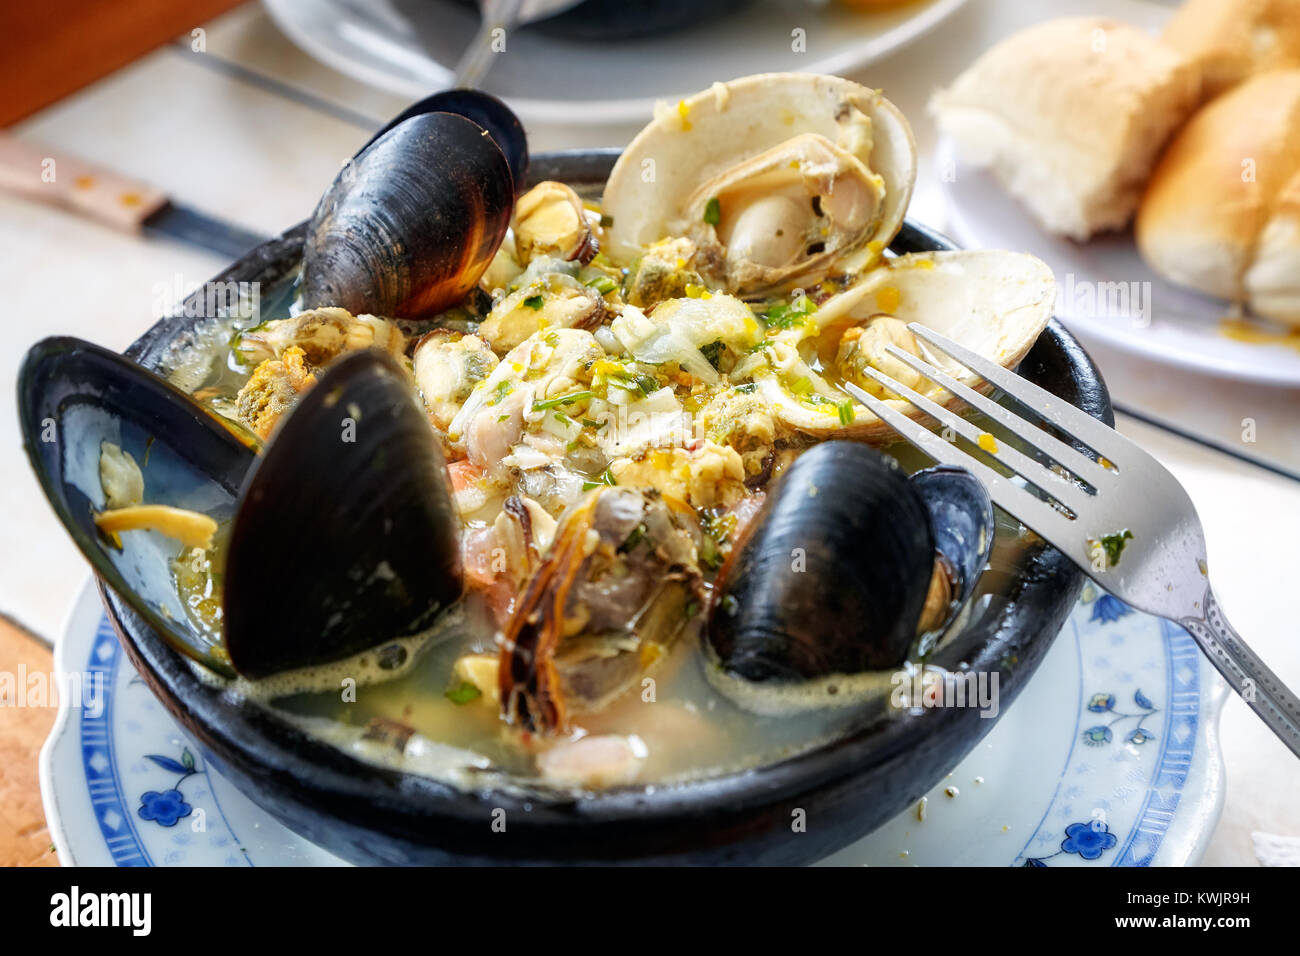 Paila Marina genießen in Santiago de Chile. Es ist eine traditionelle chilenische Seafood Suppe mit Meeresfrüchten, Fisch und eine Vielfalt von Kräutern und Gewürzen. Stockfoto